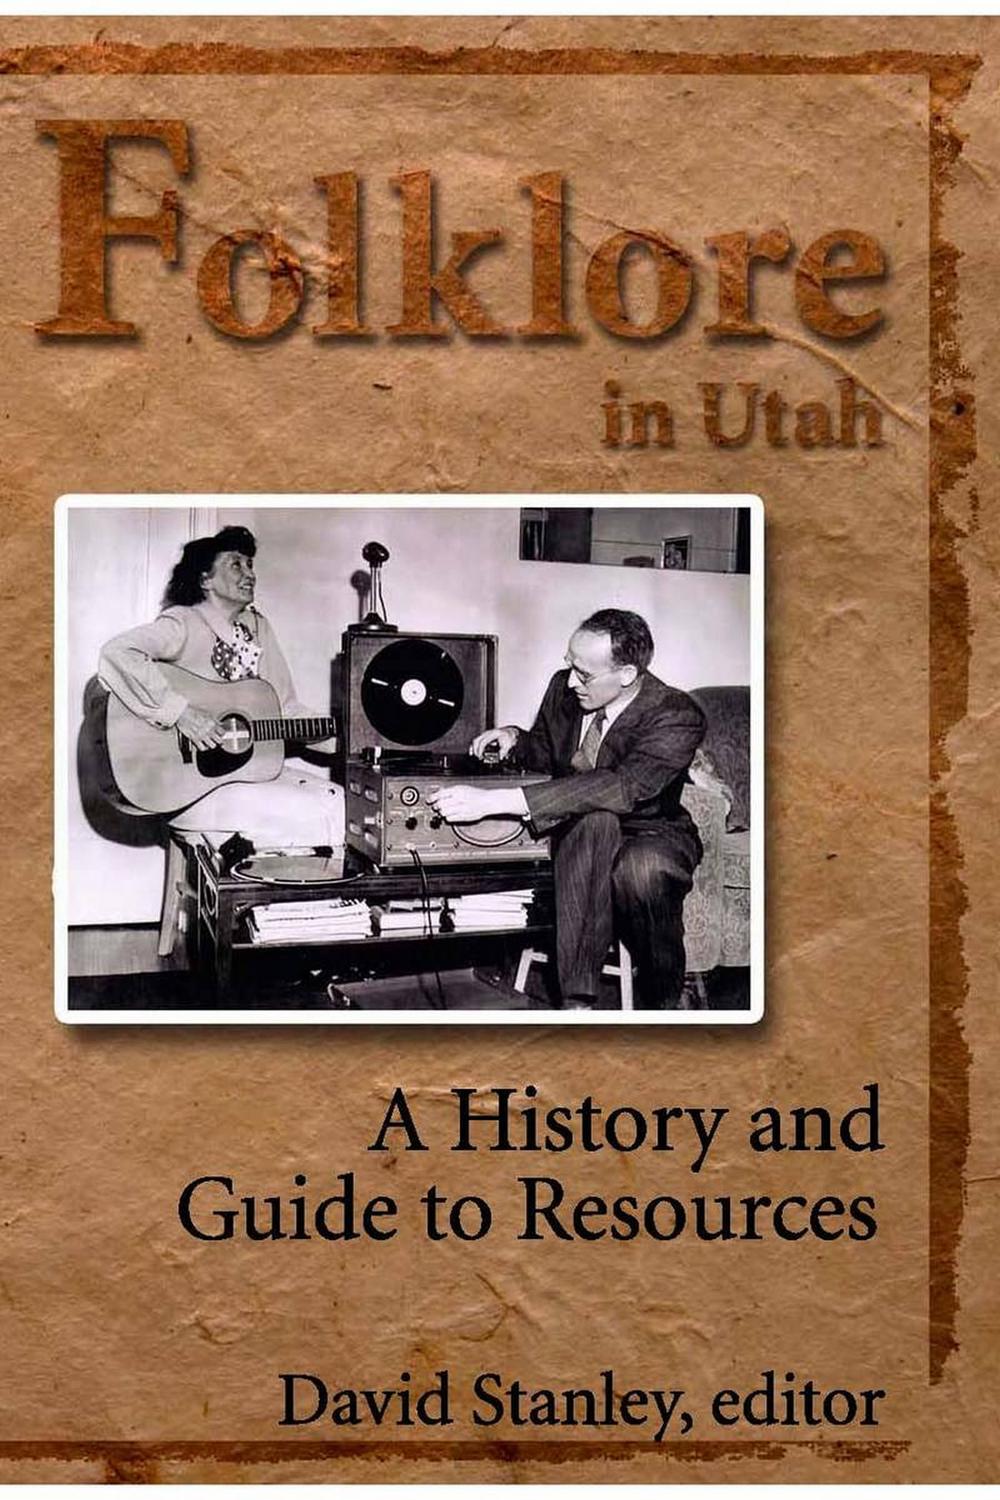 Folklore in Utah - David Stanley